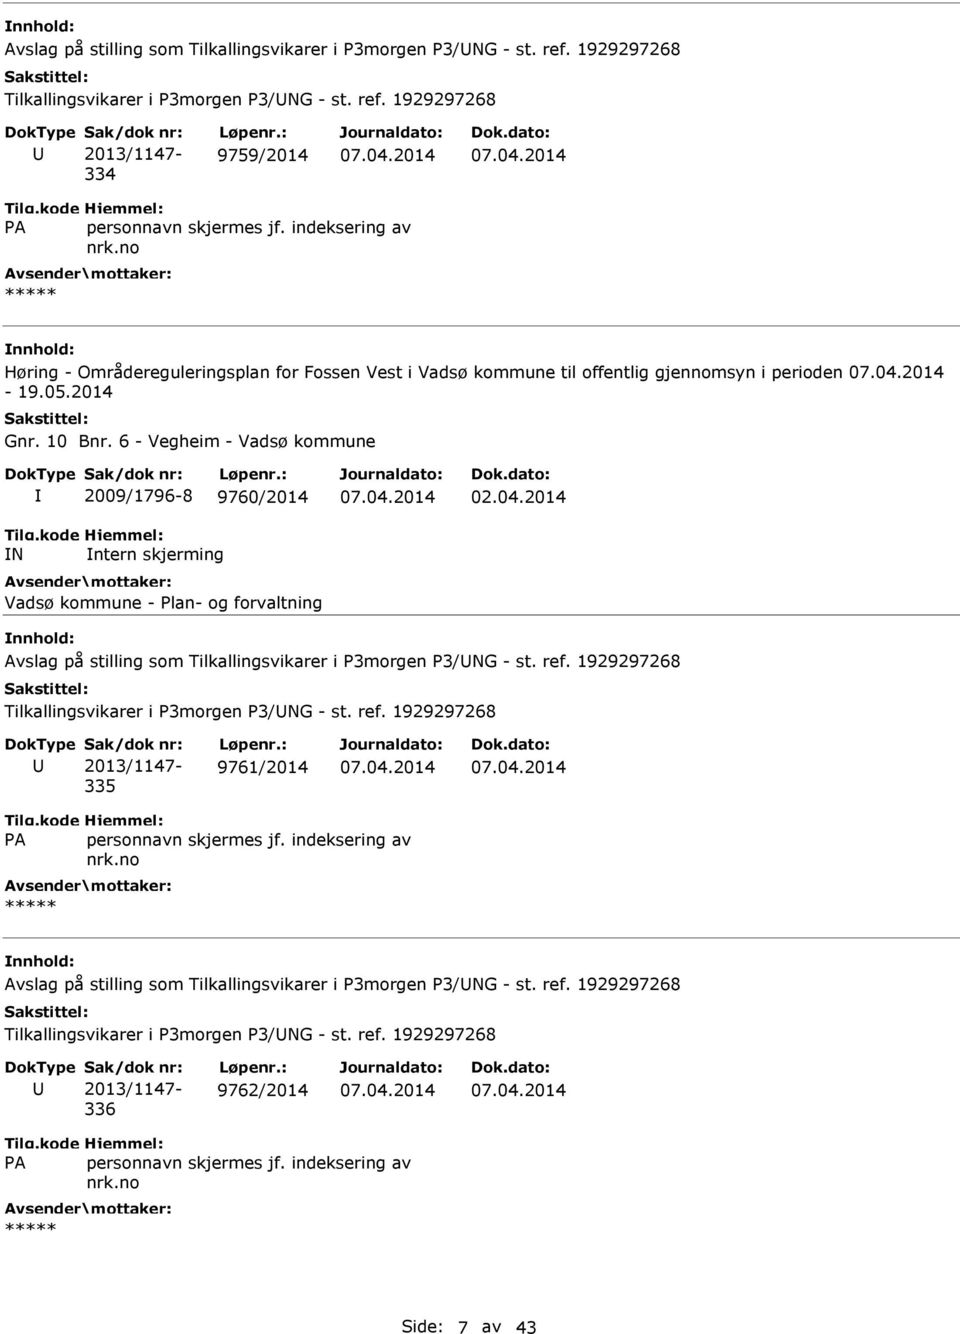 1929297268 334 9759/2014 Høring - Områdereguleringsplan for Fossen Vest i Vadsø kommune til offentlig gjennomsyn i perioden - 19.05.2014 Gnr. 10 Bnr.